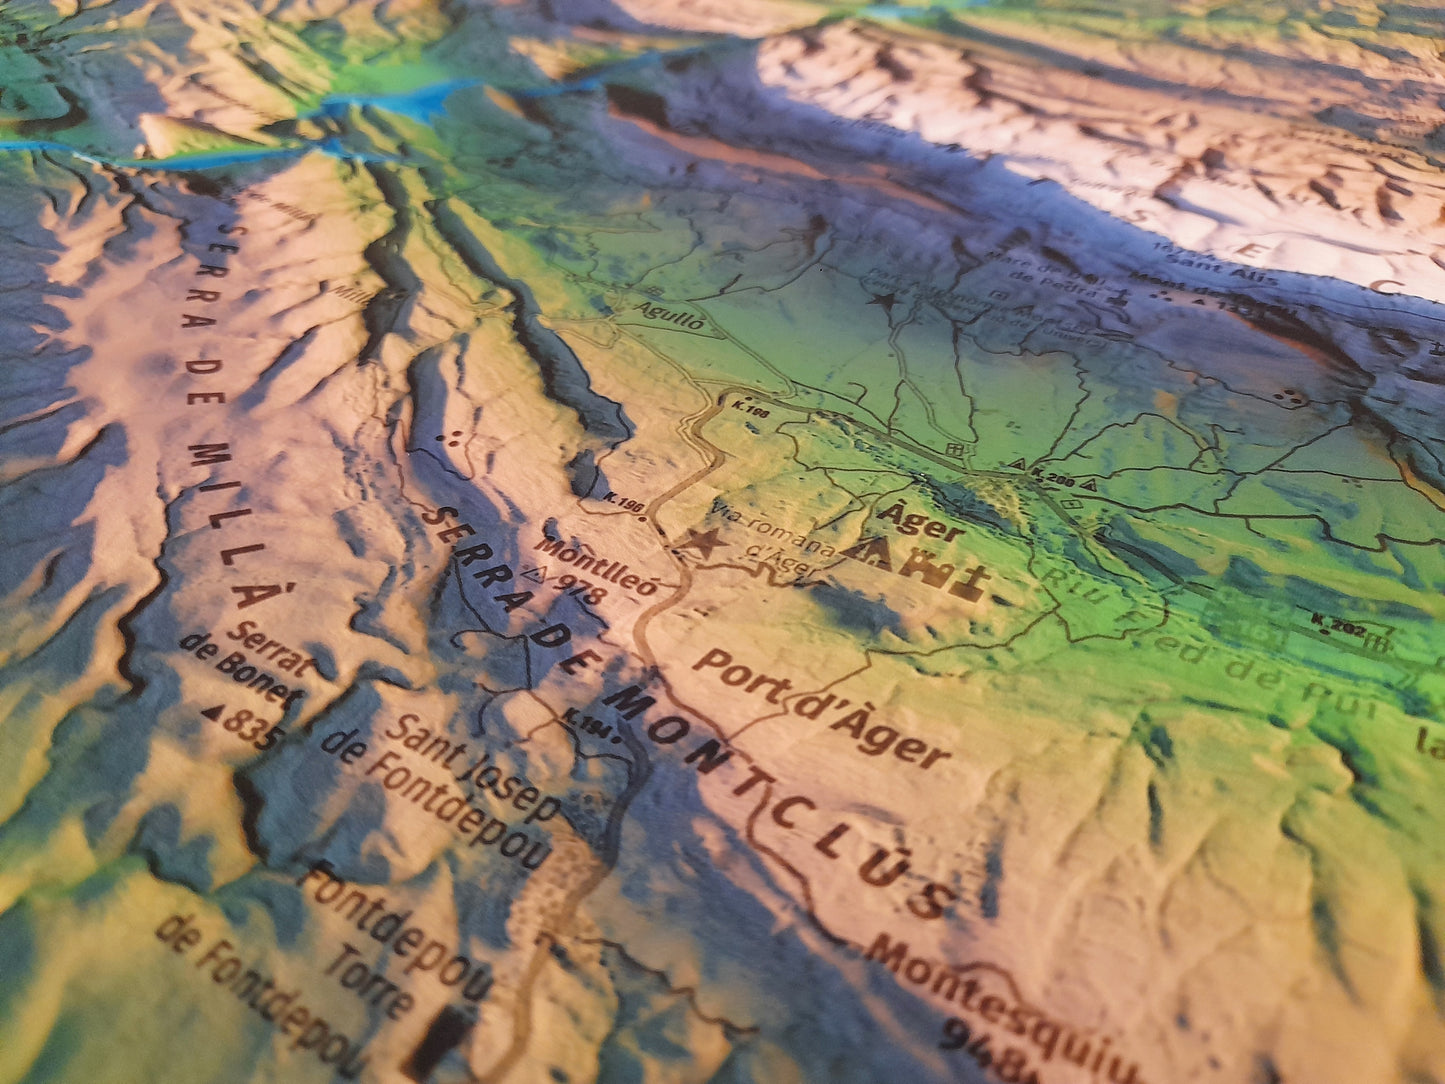 Detall Vall d'Ager. Mapa imprès que inclou tota la Serra del Montsec, que inclou Montsec de l'Estall, Montsec d'Ares i Montsec de Rúbies (o de Meià). El mapa es presenta en un estil minimalista i elegant, amb un detallat modelatge d'elevacions terrestres mapa imprès que abasta tota la Serra del Montsec, que inclou Montsec de l'Estall, Montsec d'Ares i Montsec de Rúbies (o de Meià). El mapa es presenta en un estil minimalista i elegant, amb un modelat detallat d'elevacions terrestres.